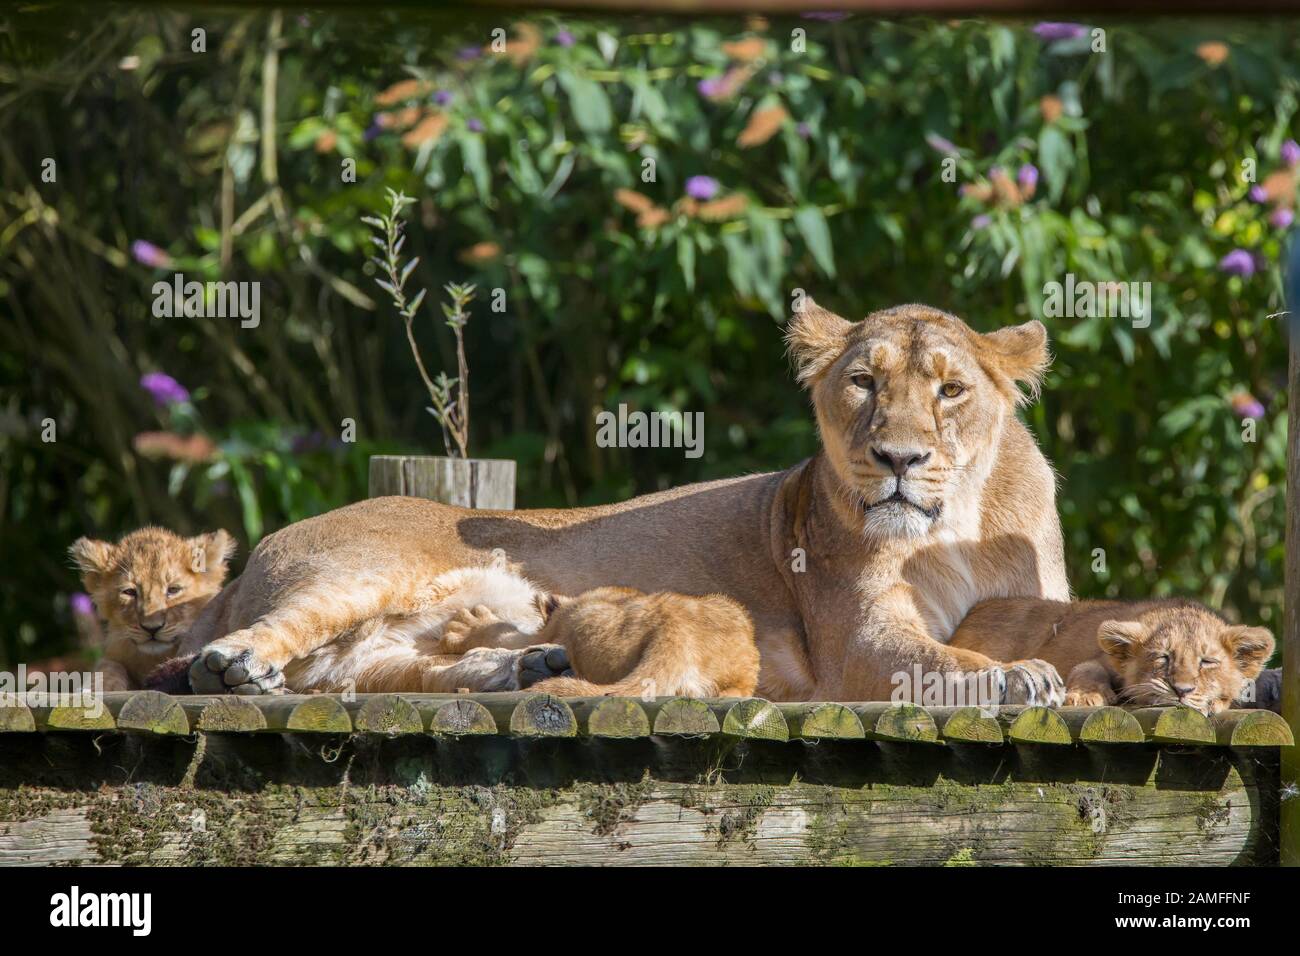 Gros plan sur la lioness asiatique (Panthera leo persicus) posée avec de jolies oursons en plein air sous le soleil de l'été, dans une enceinte au parc animalier Cotswold, Royaume-Uni. Banque D'Images